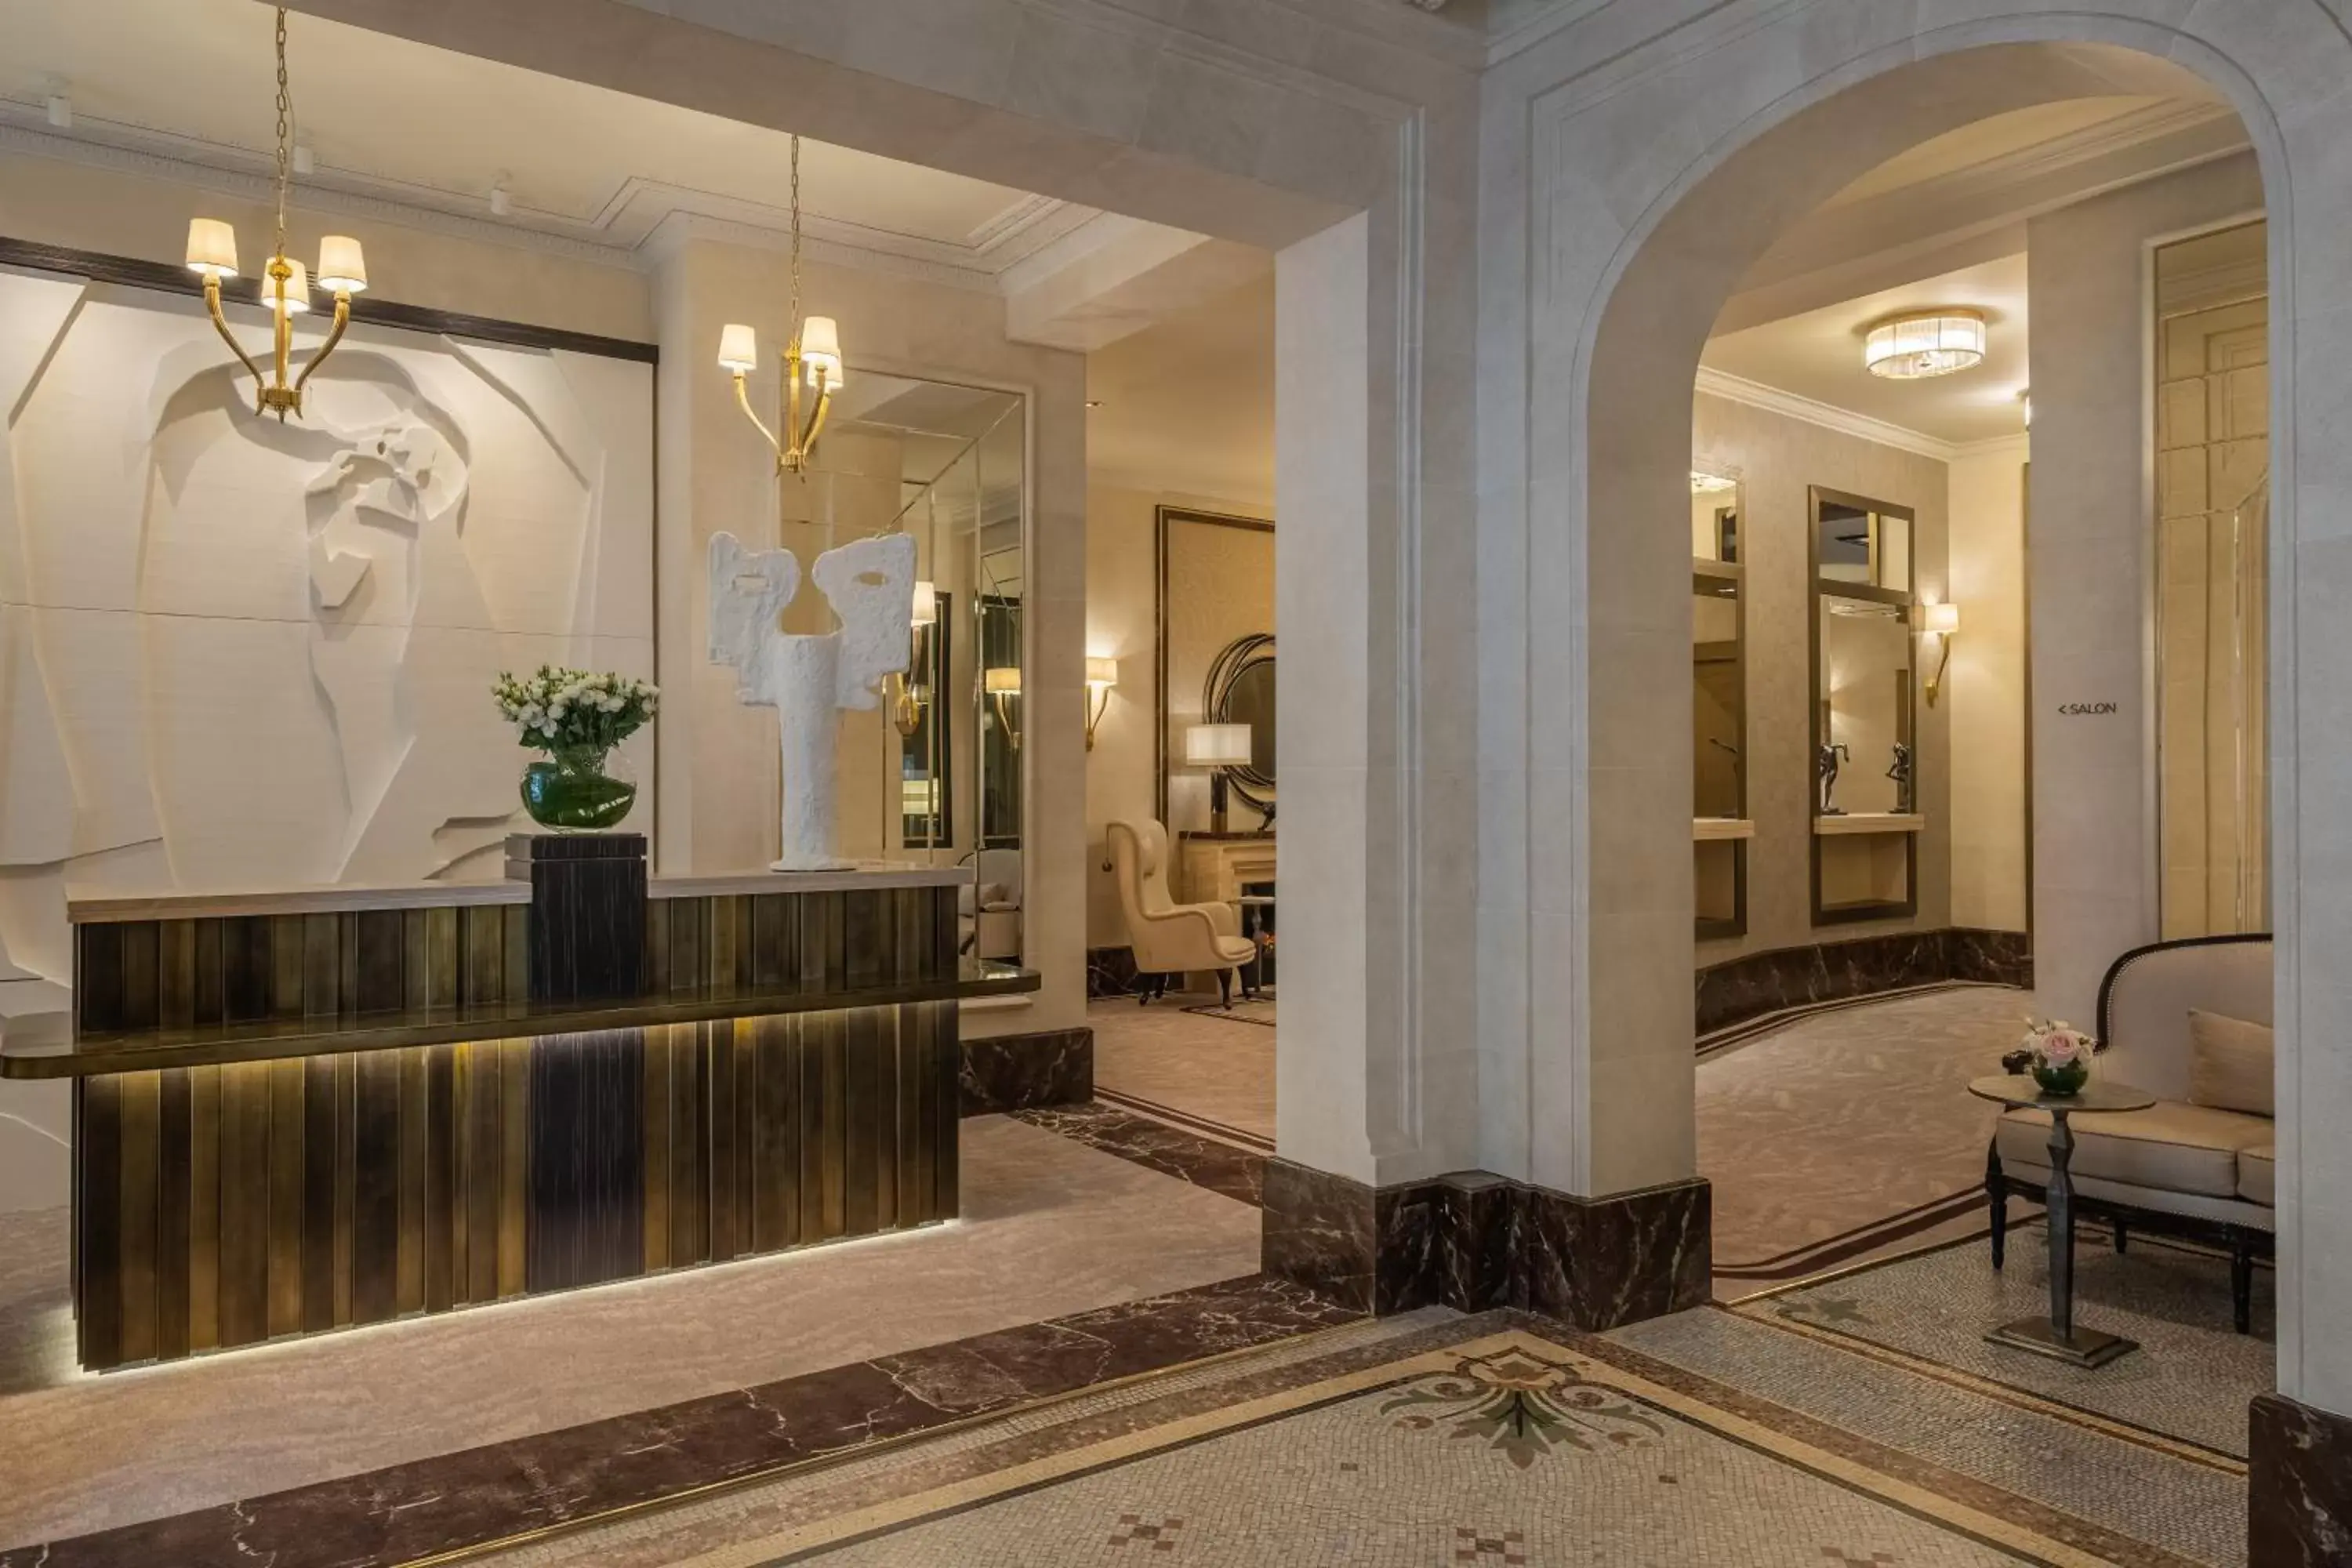 Lobby or reception, Lobby/Reception in Hôtel Elysia by Inwood Hotels